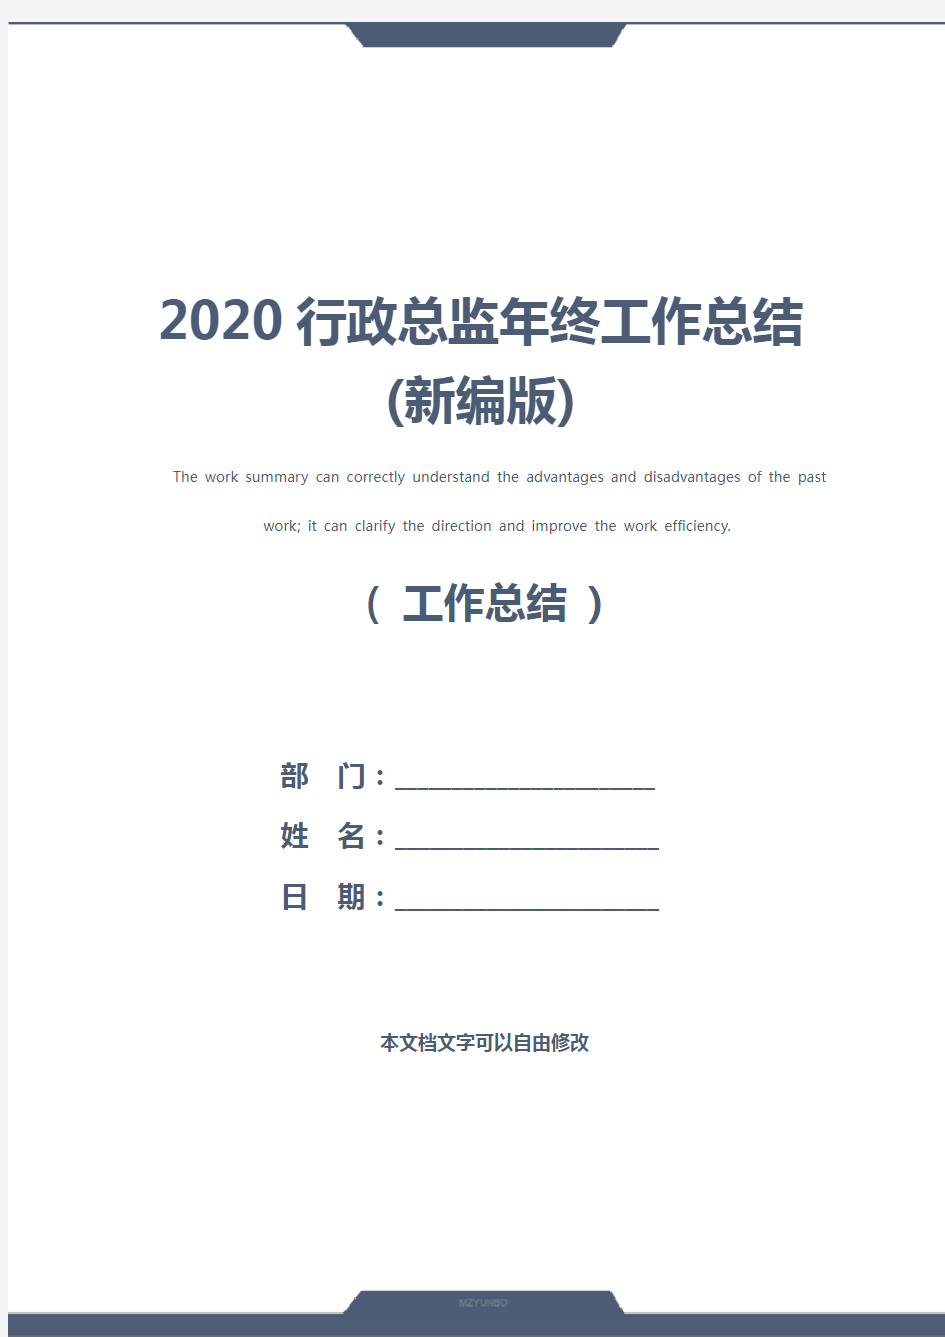 2020行政总监年终工作总结(新编版)